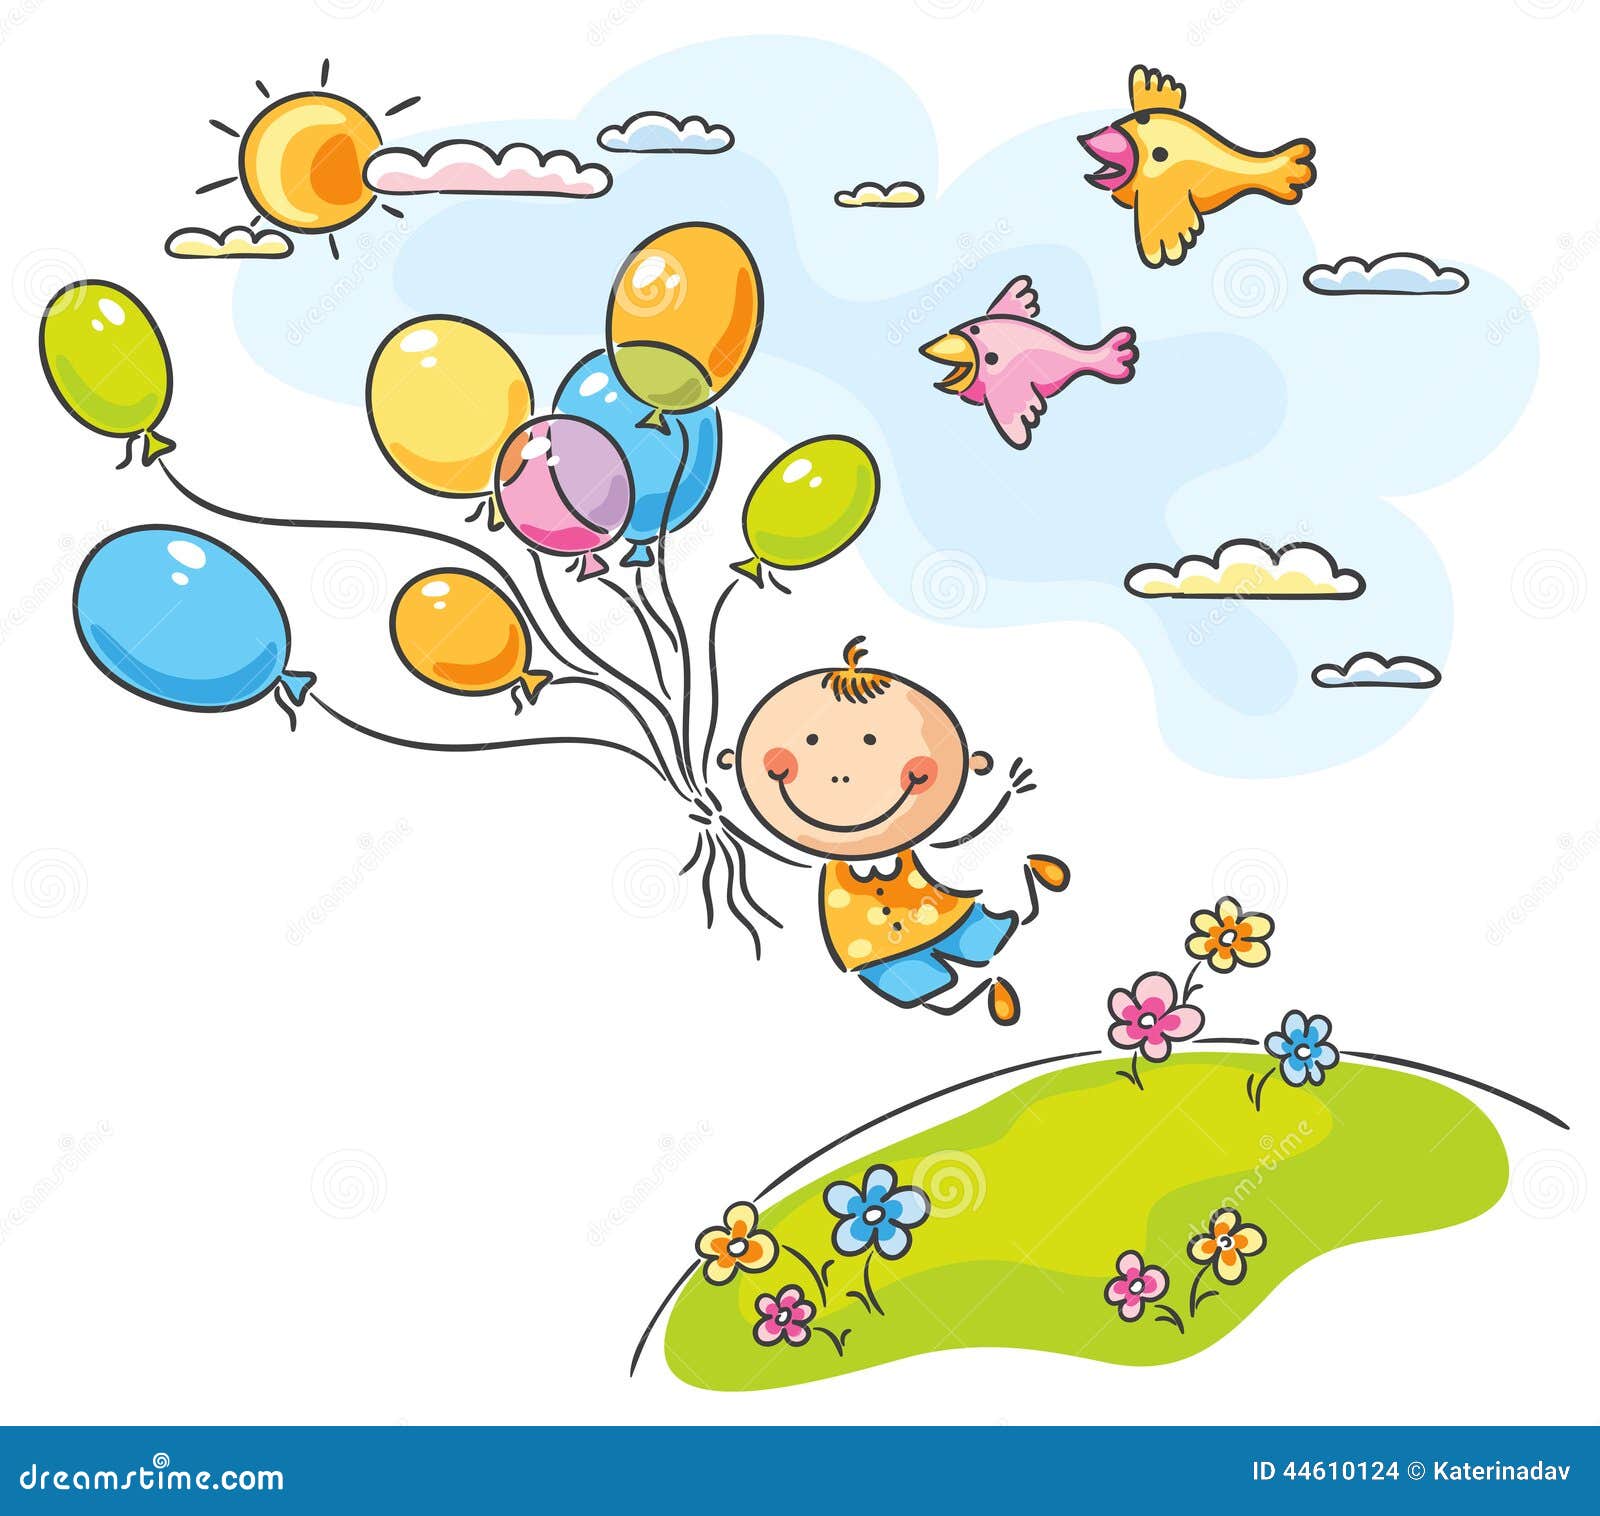 Нарисованные дети летящие на воздушных шариках